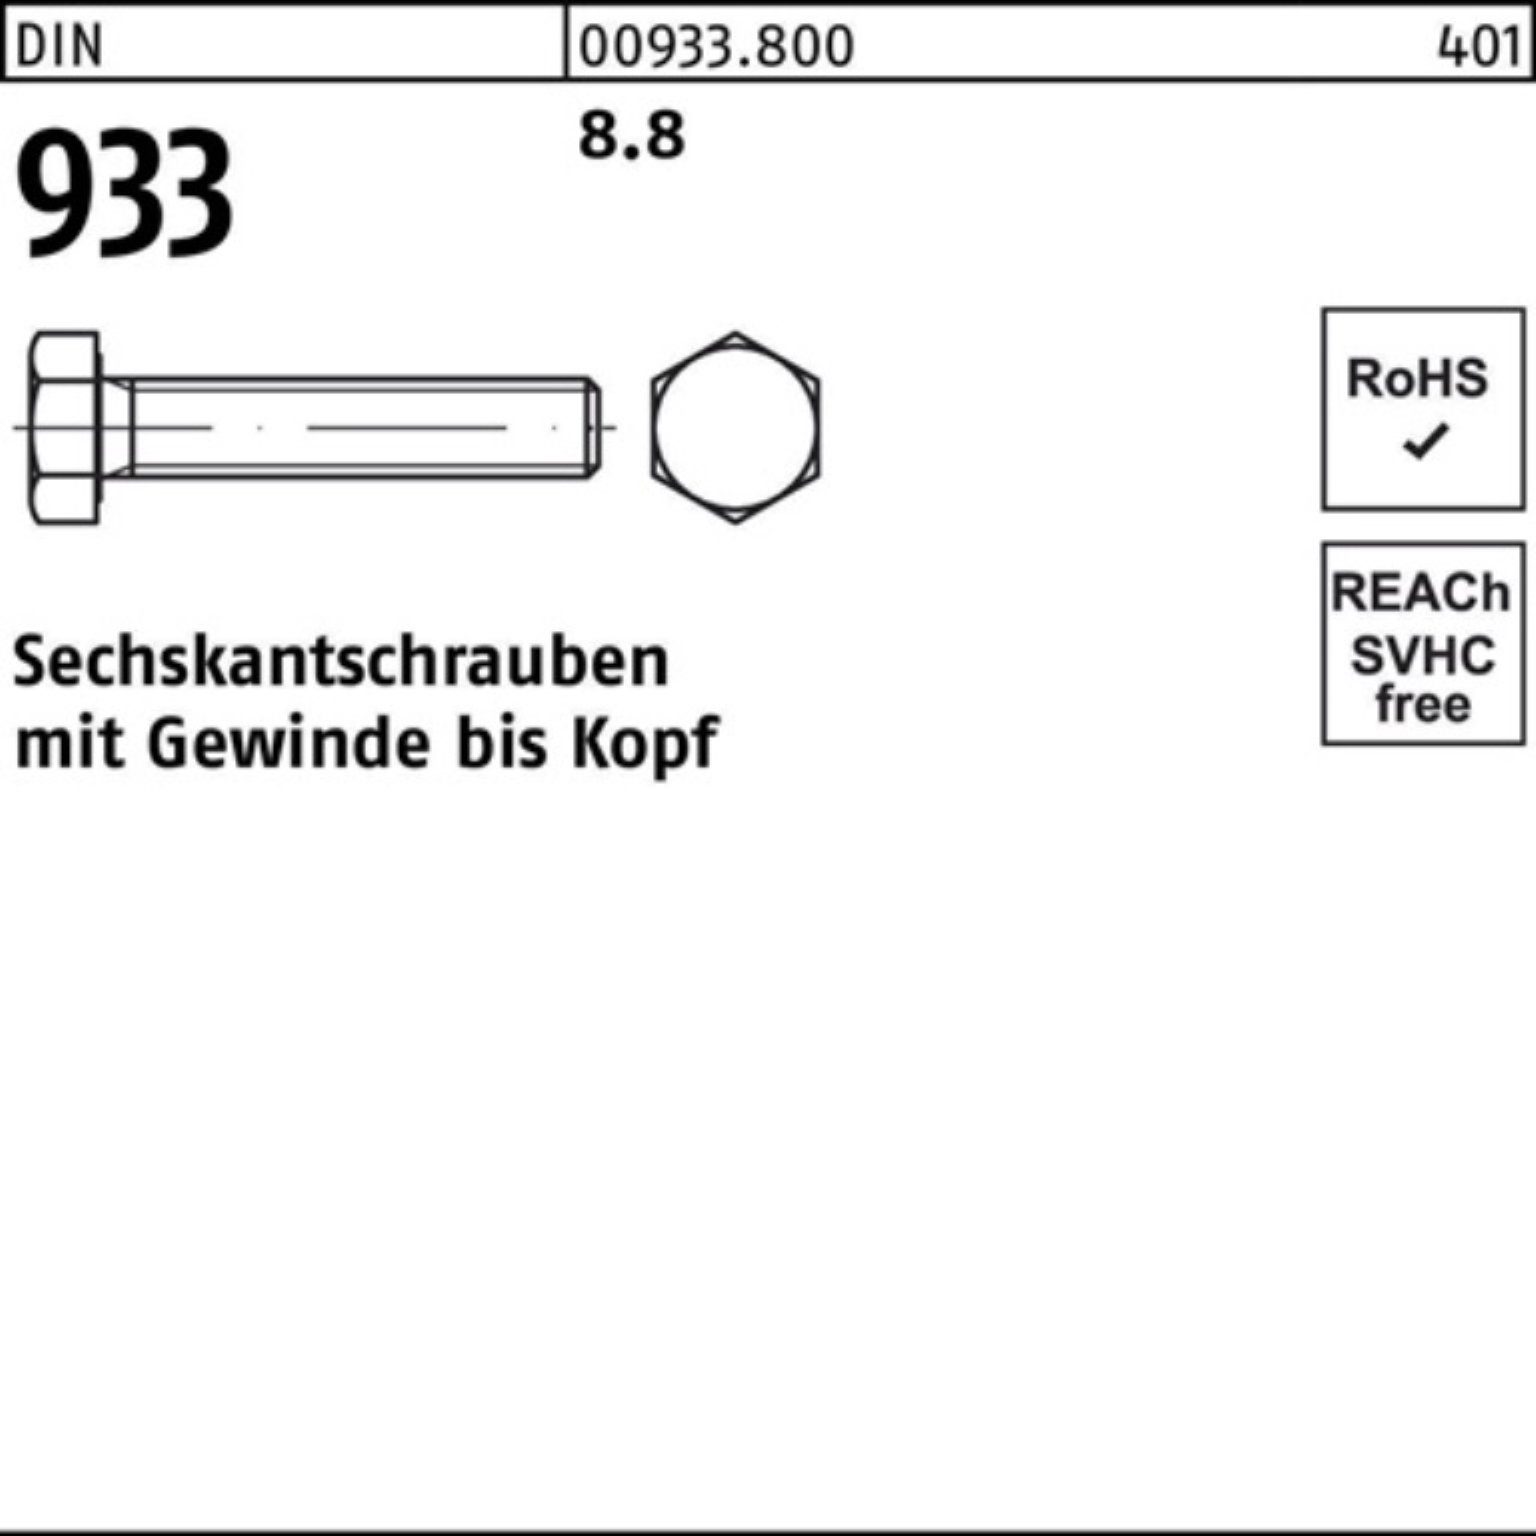 Reyher Sechskantschraube 100er Pack Sechskantschraube 180 DIN Stück 933 8.8 DIN 933 VG M42x 1